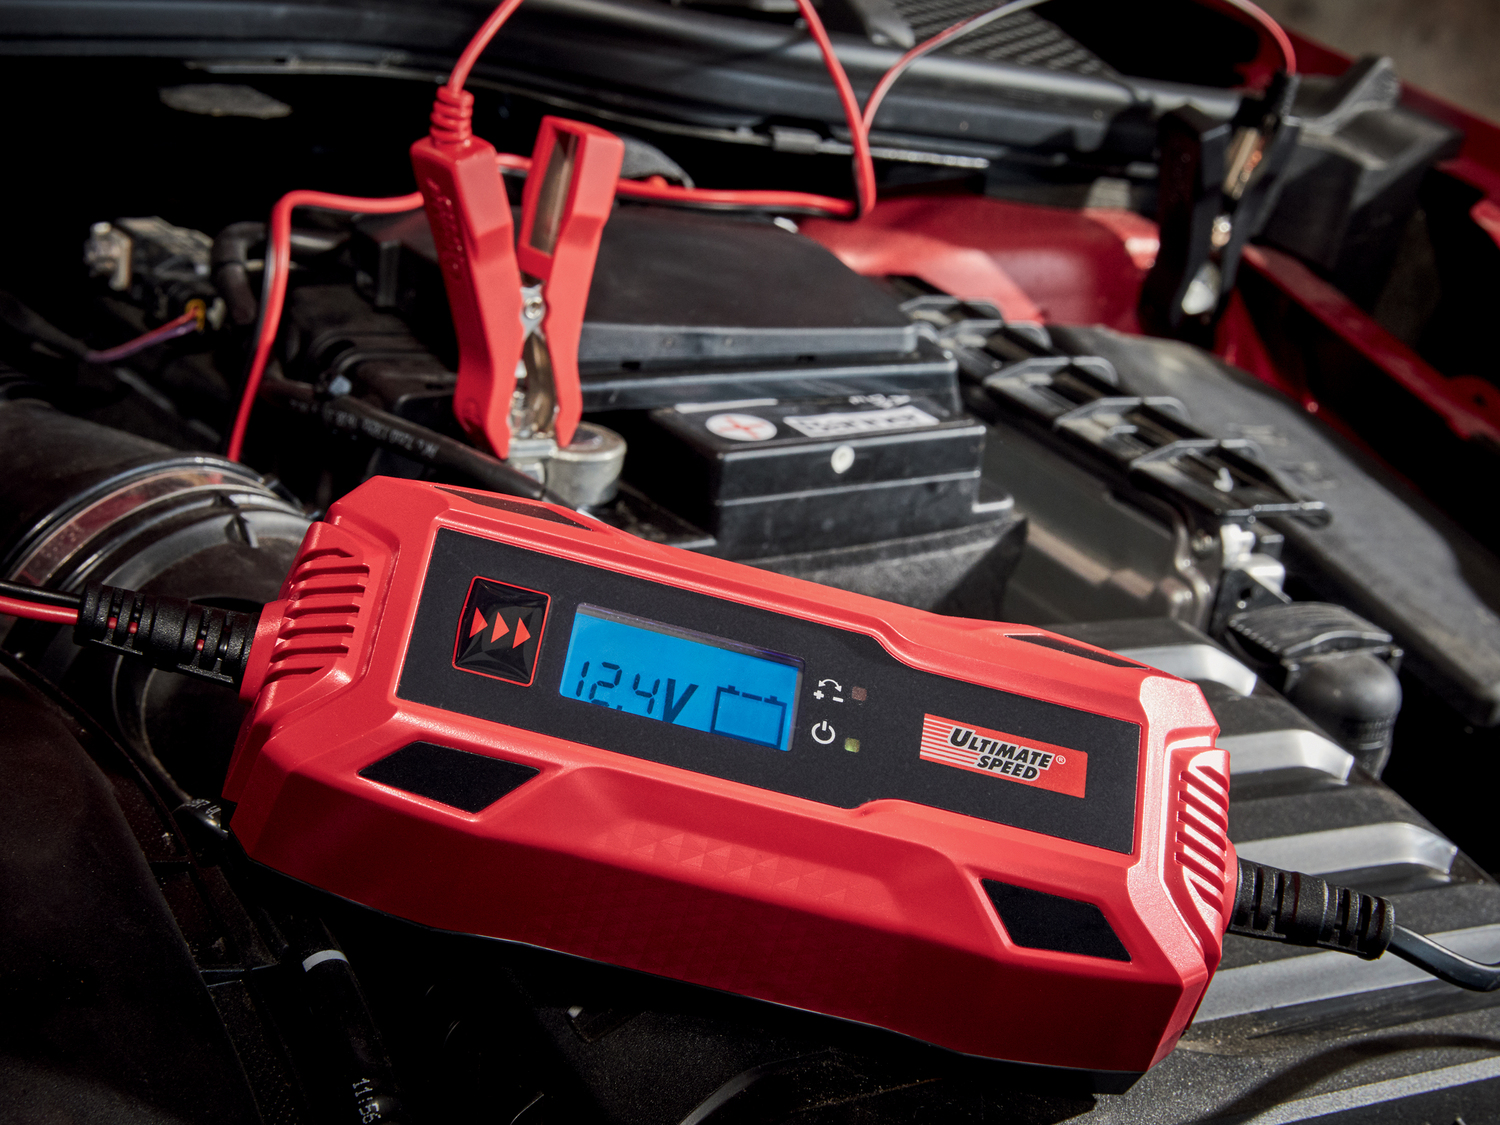 Chargeur de batterie pour voiture Ultimate Speed, le prix 14.99 € 
- Pour toutes ...